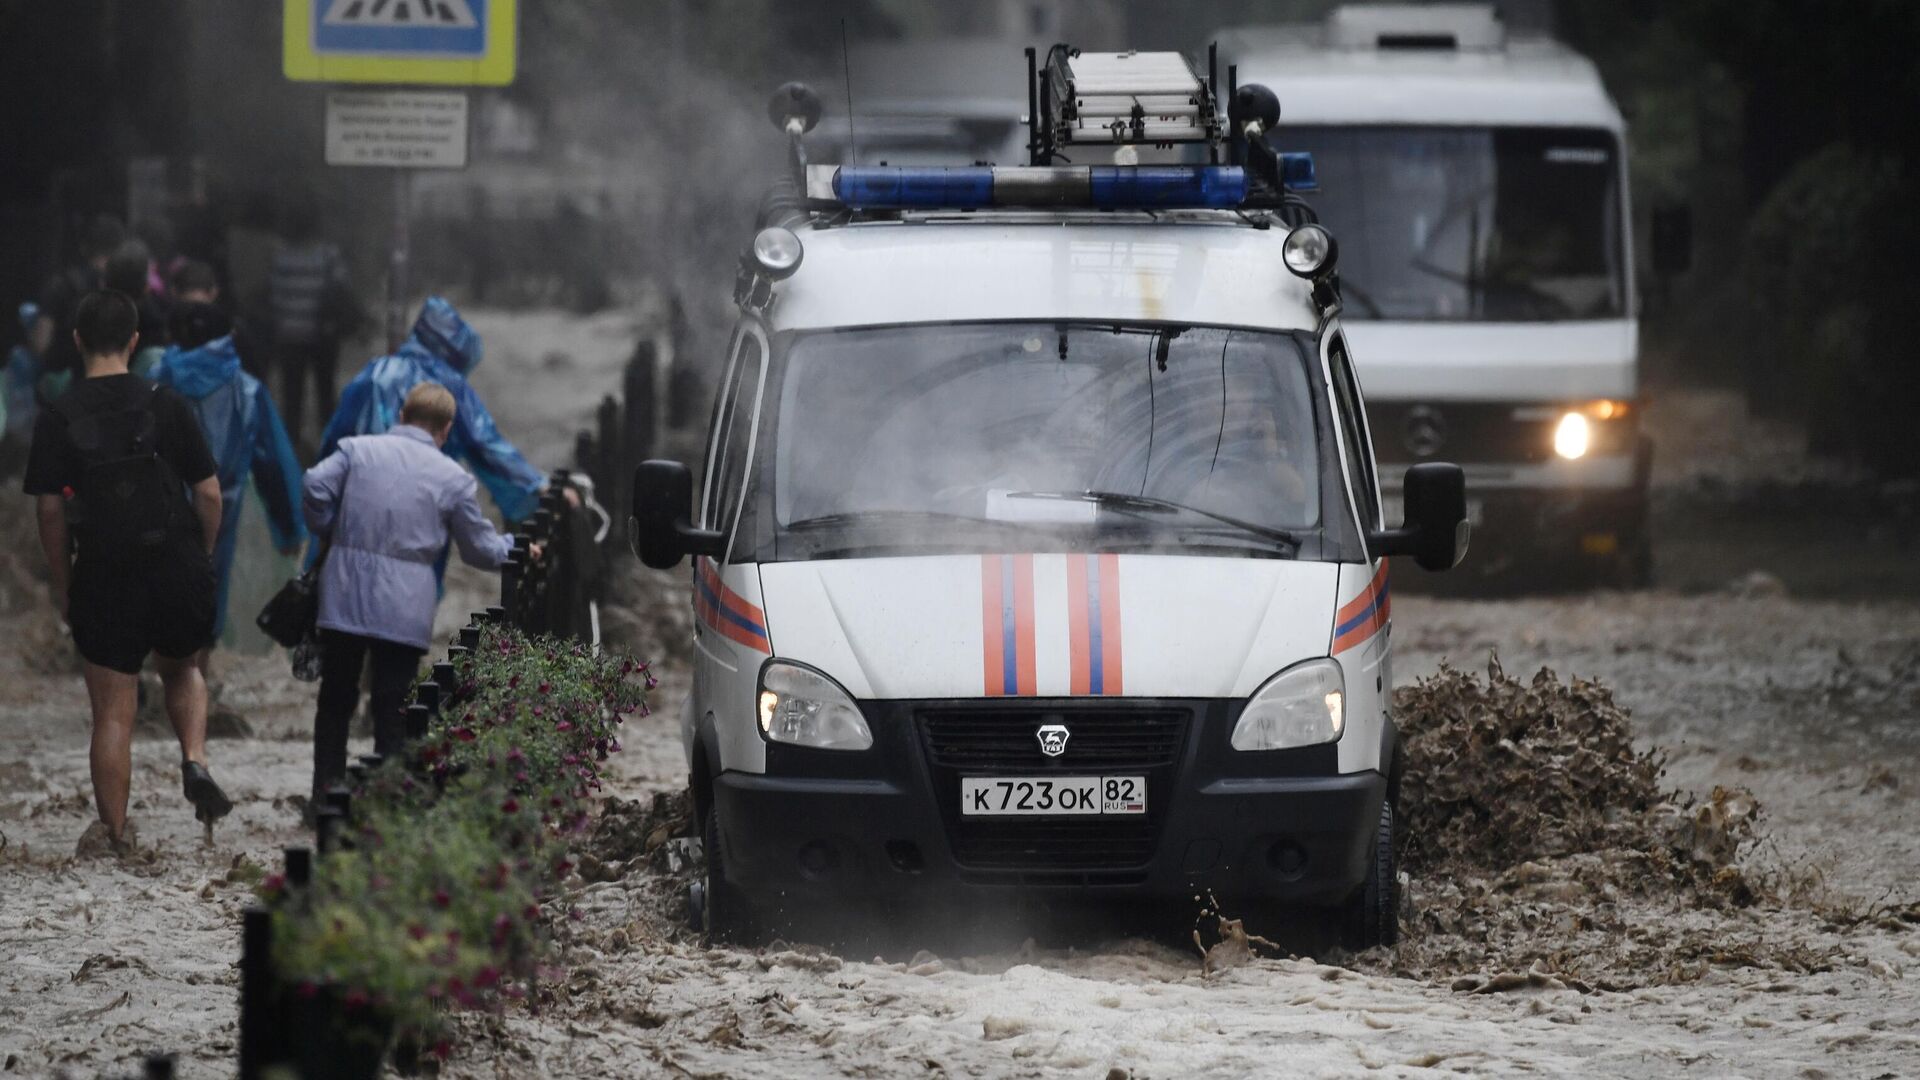 Число пострадавших от наводнения в Ялте возросло до 49 человек